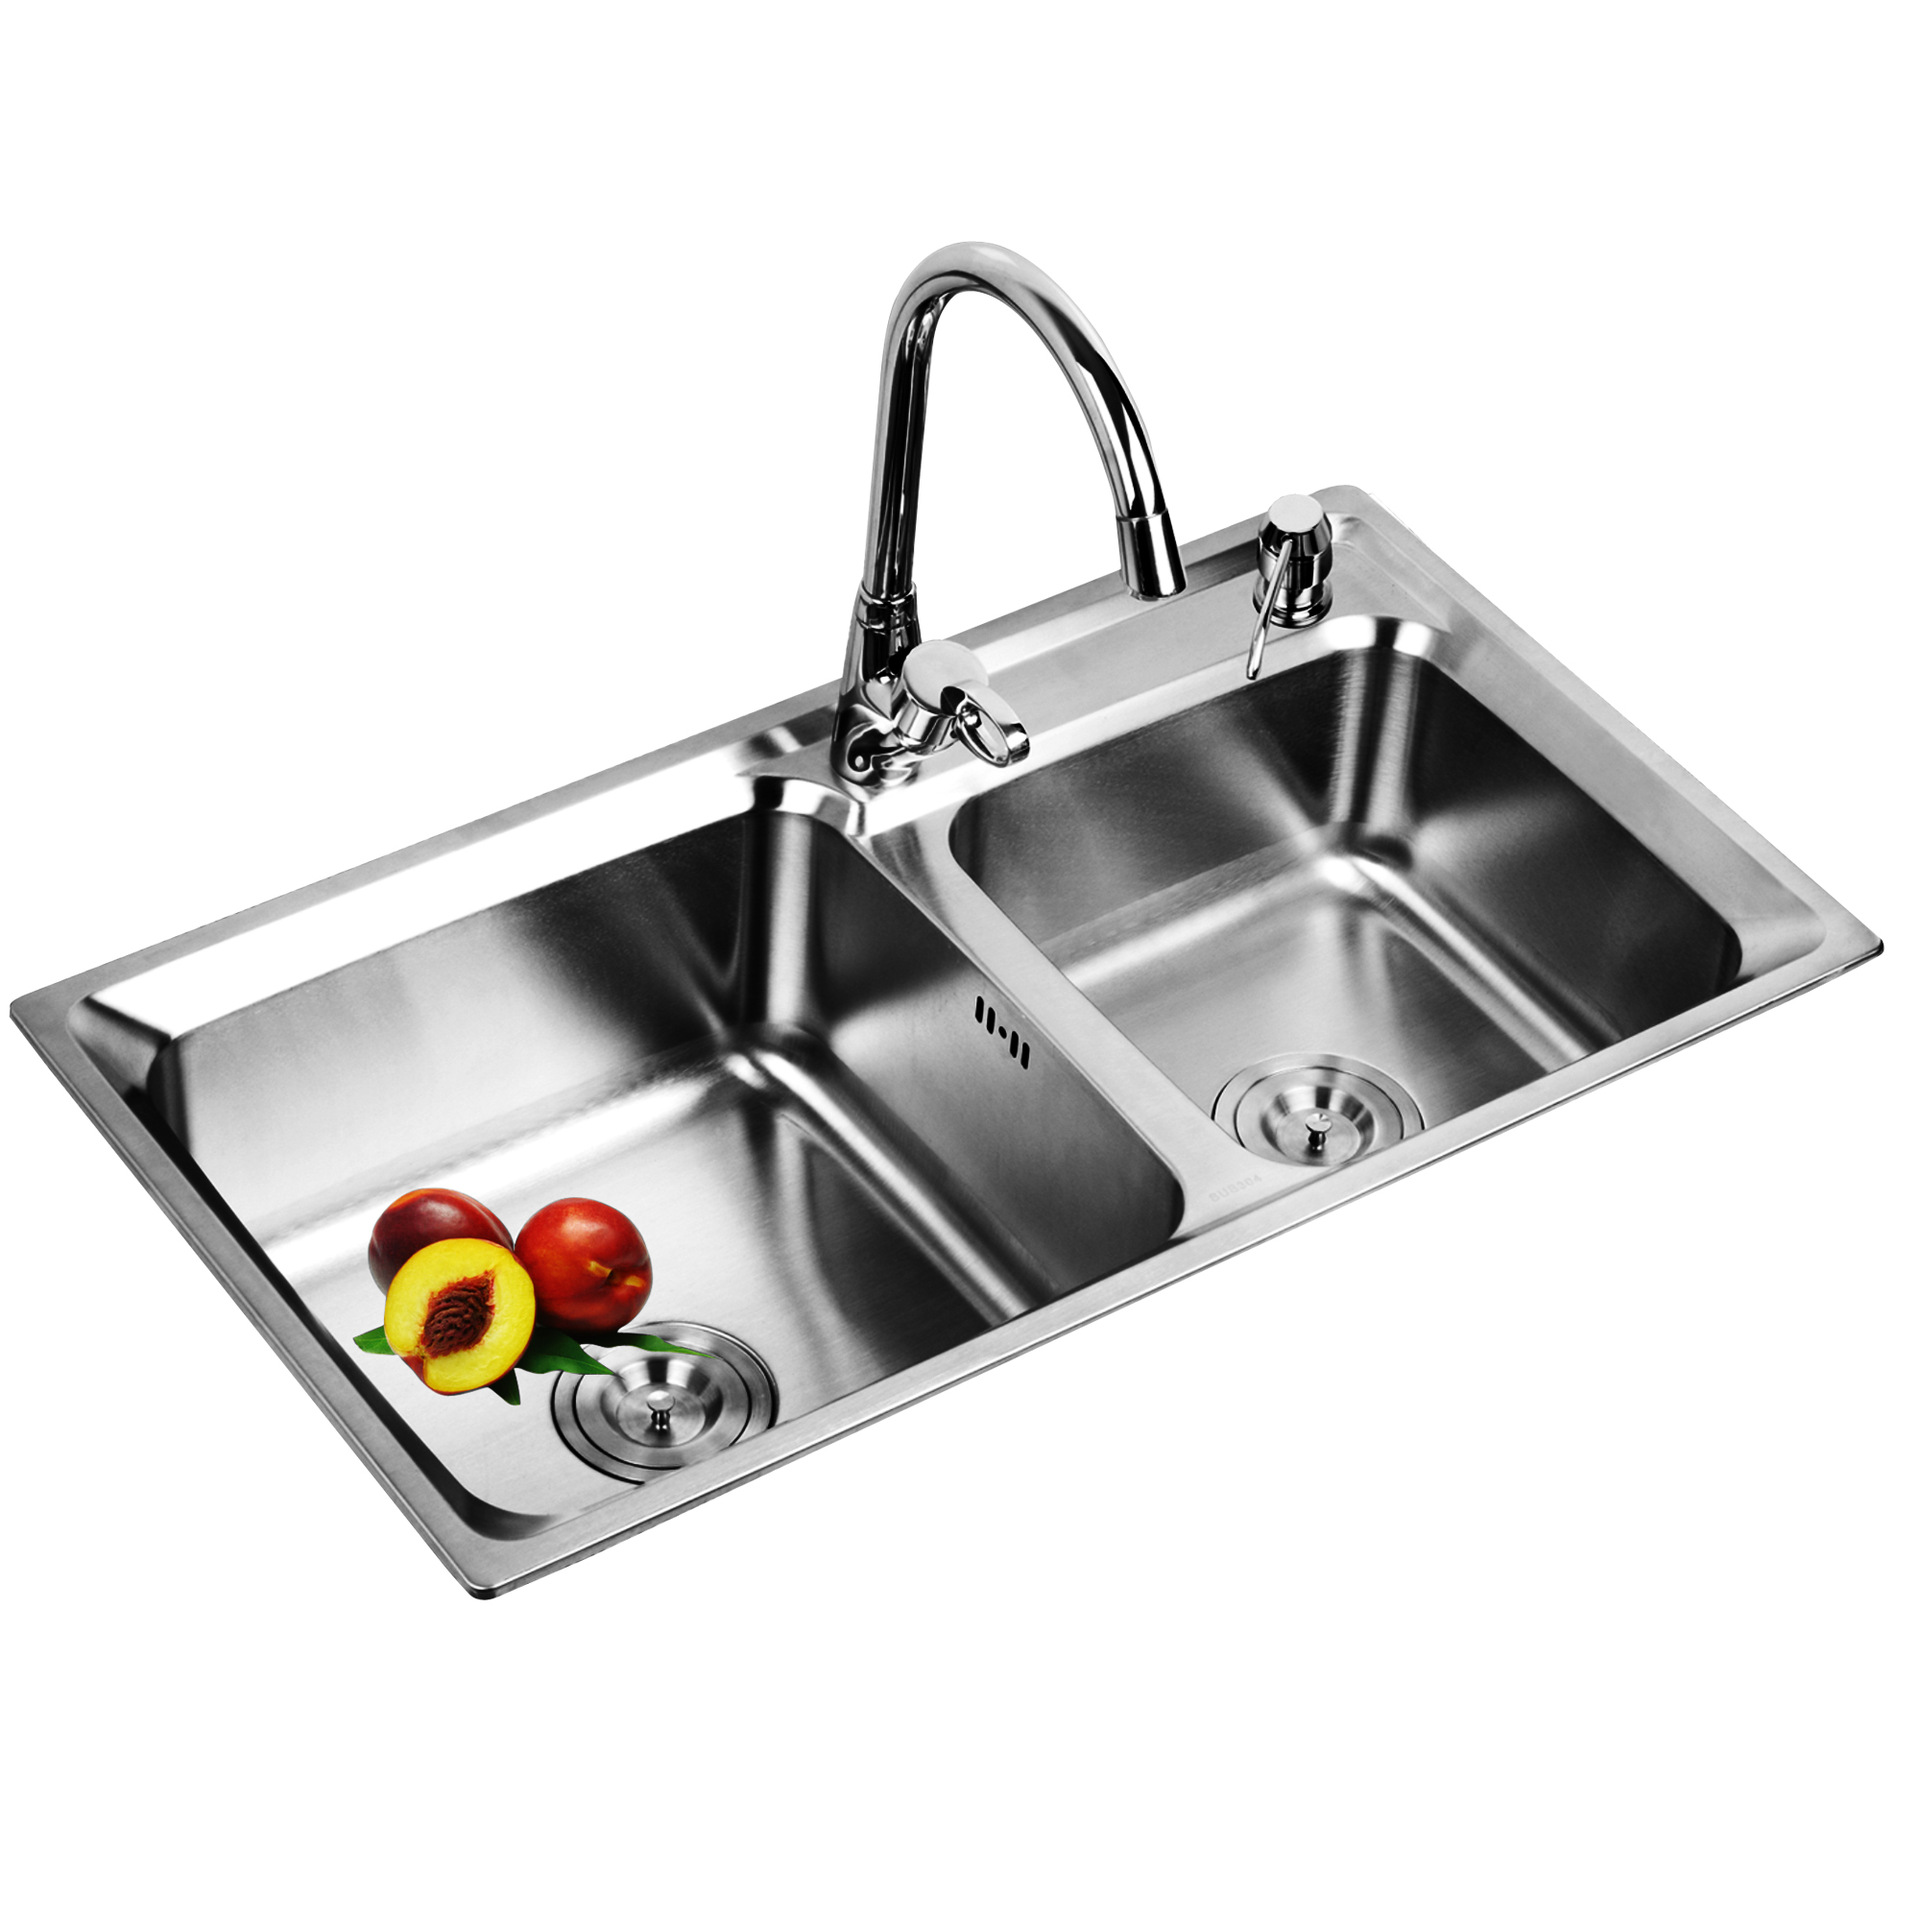 【工厂直销】k6939 304不锈钢水槽 厨房水槽不锈钢批发 洗菜盆304